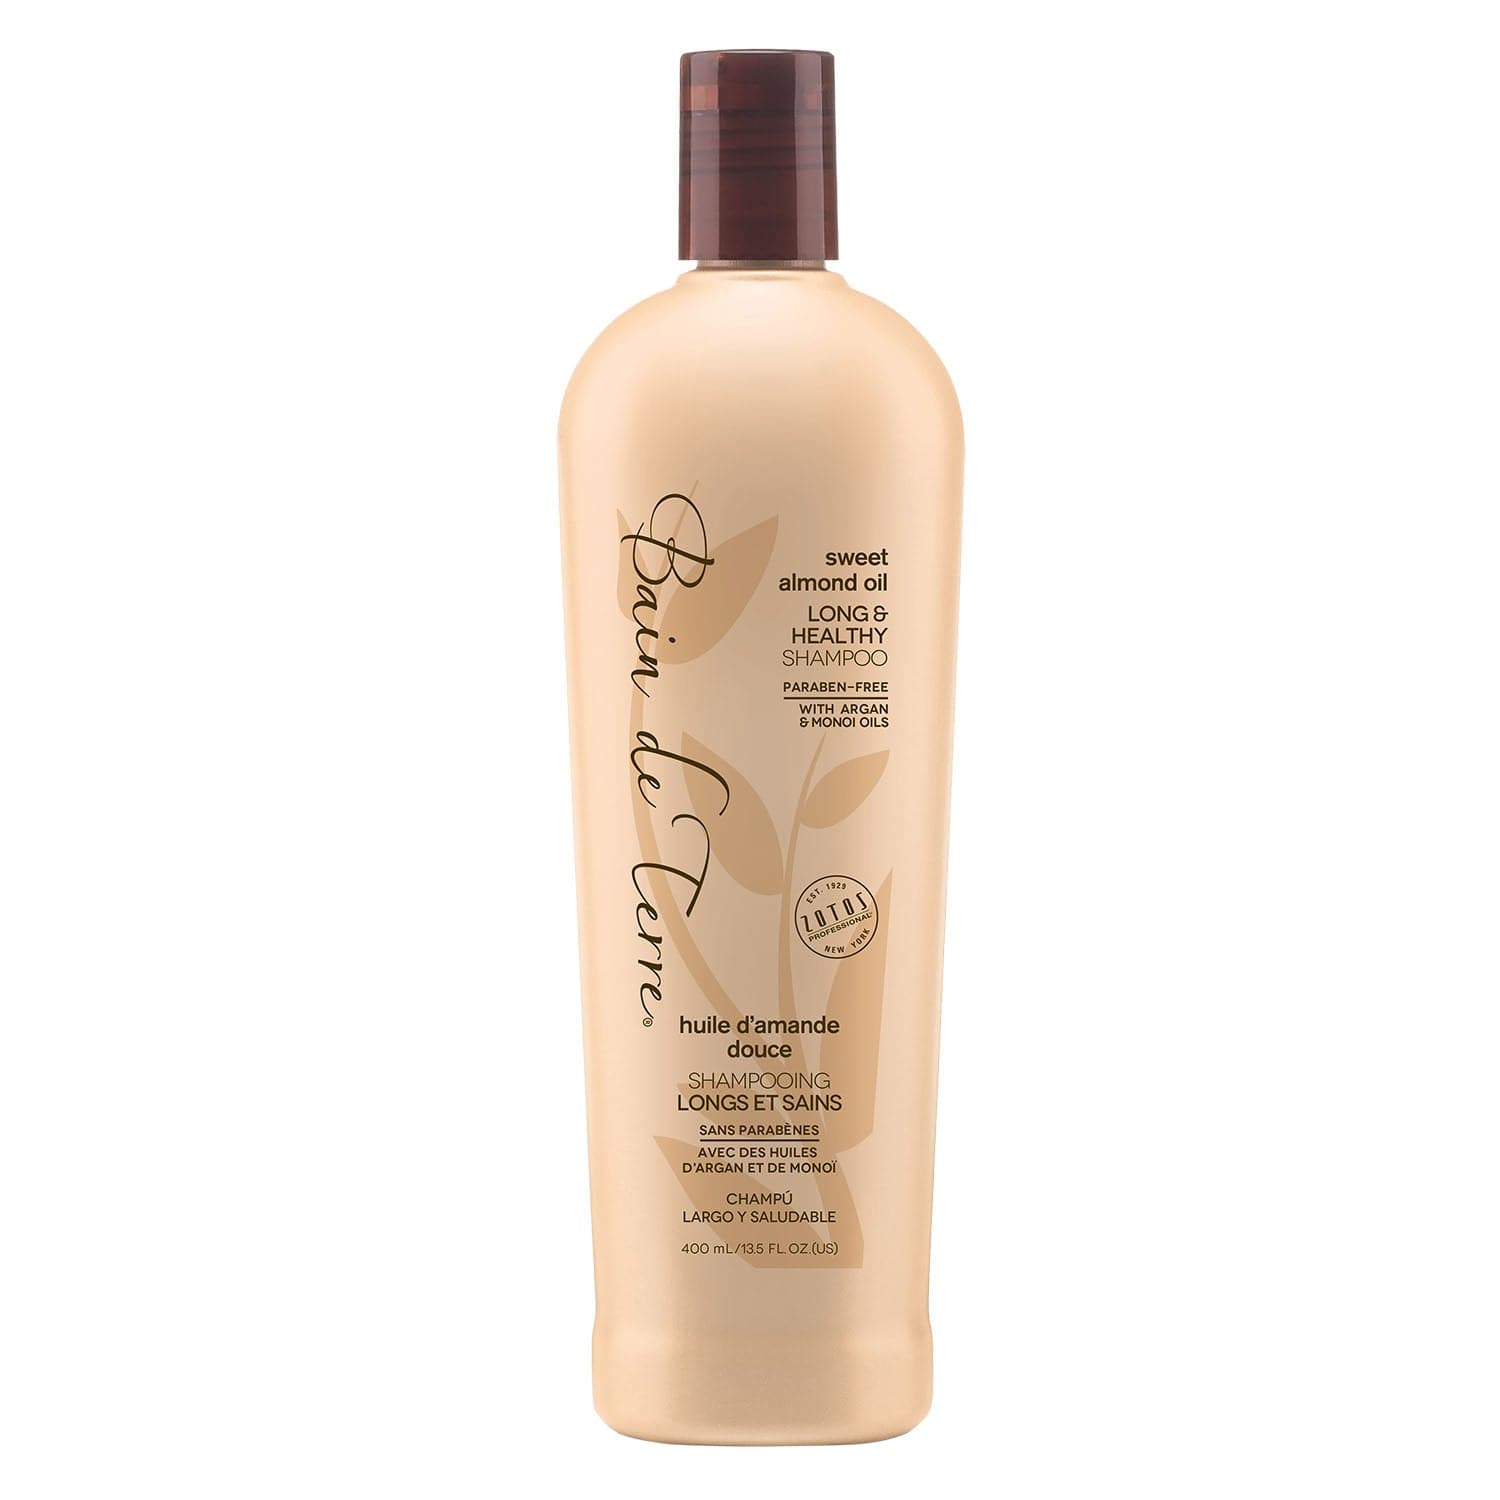 Bain de Terre® Long & Healthy Shampoo, Sweet Almond Oil